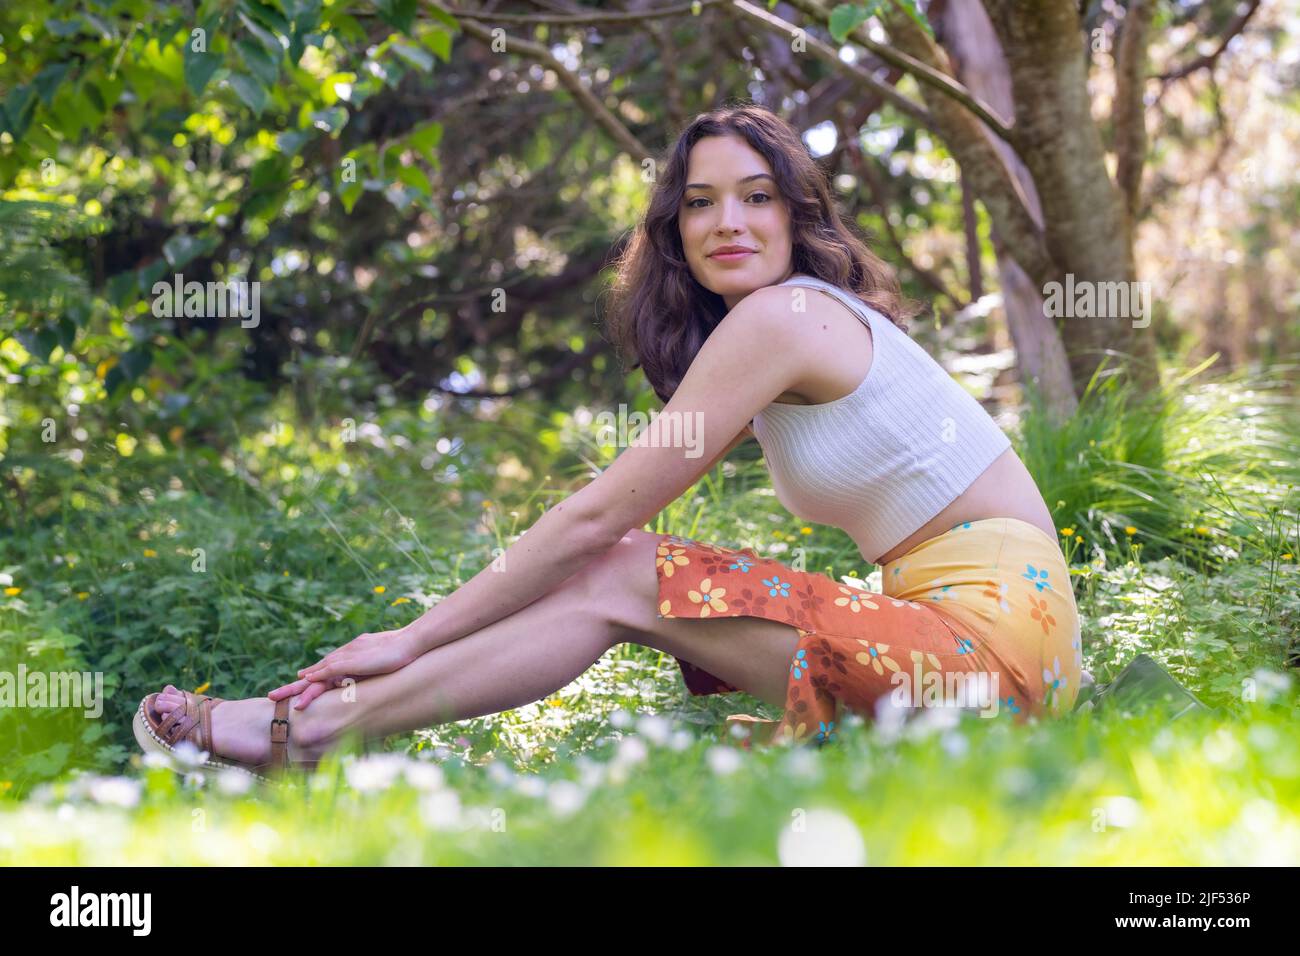 Portrait d'une jeune femme assise dans un jardin en jupe et brassière orange Banque D'Images